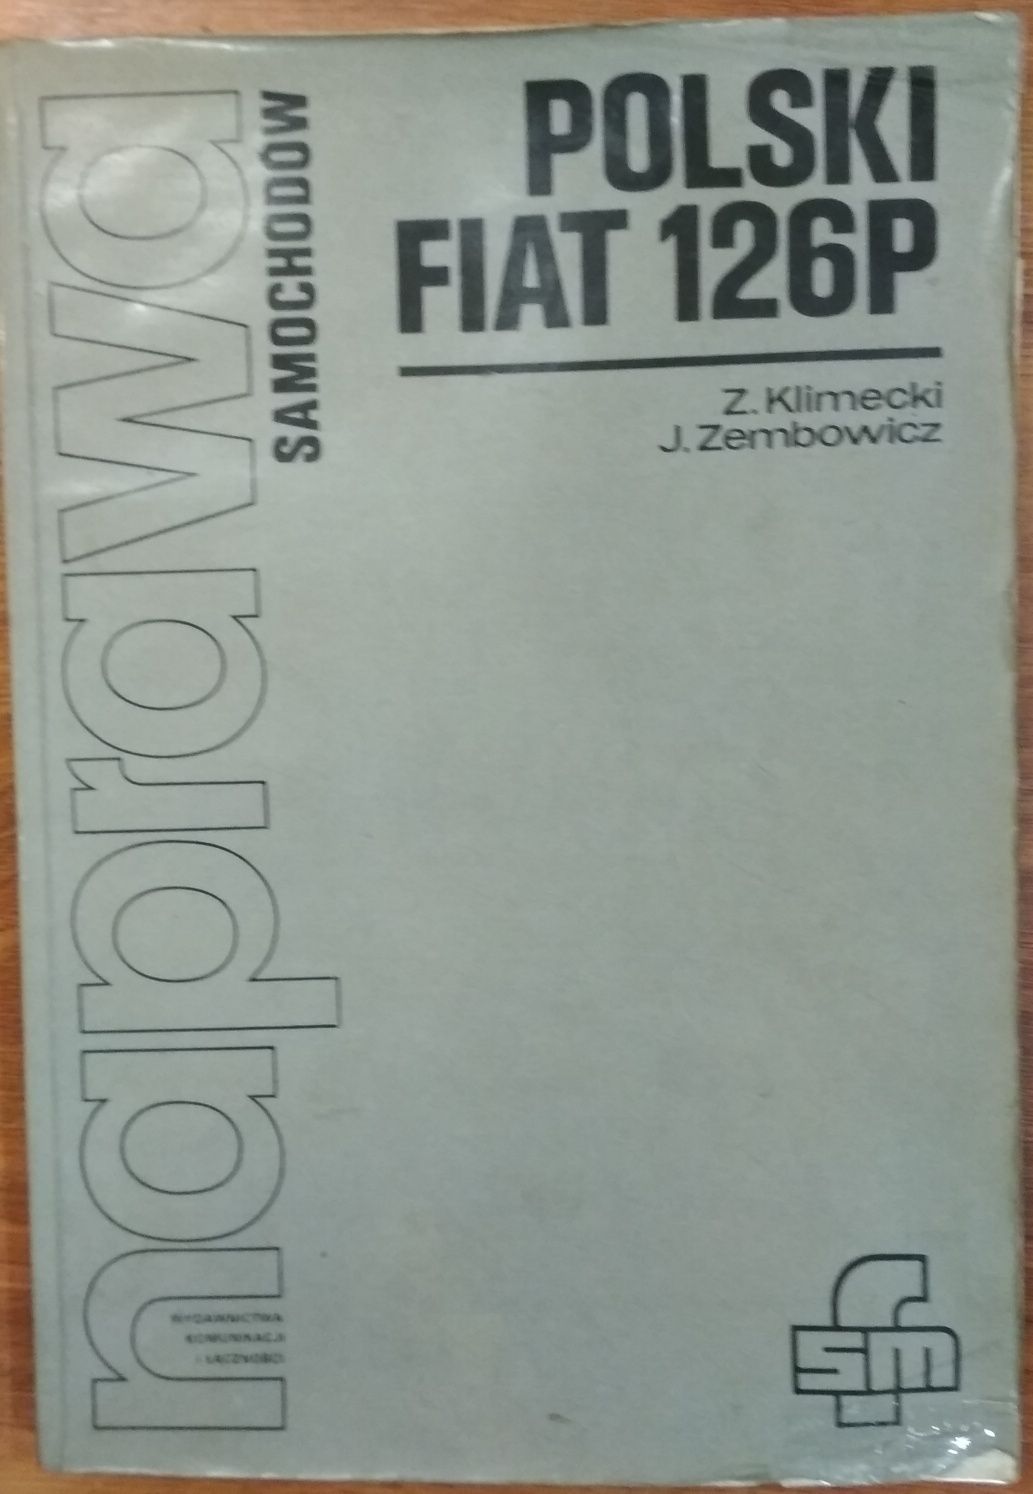 Fiat 126p Naprawa komplet 2 książek